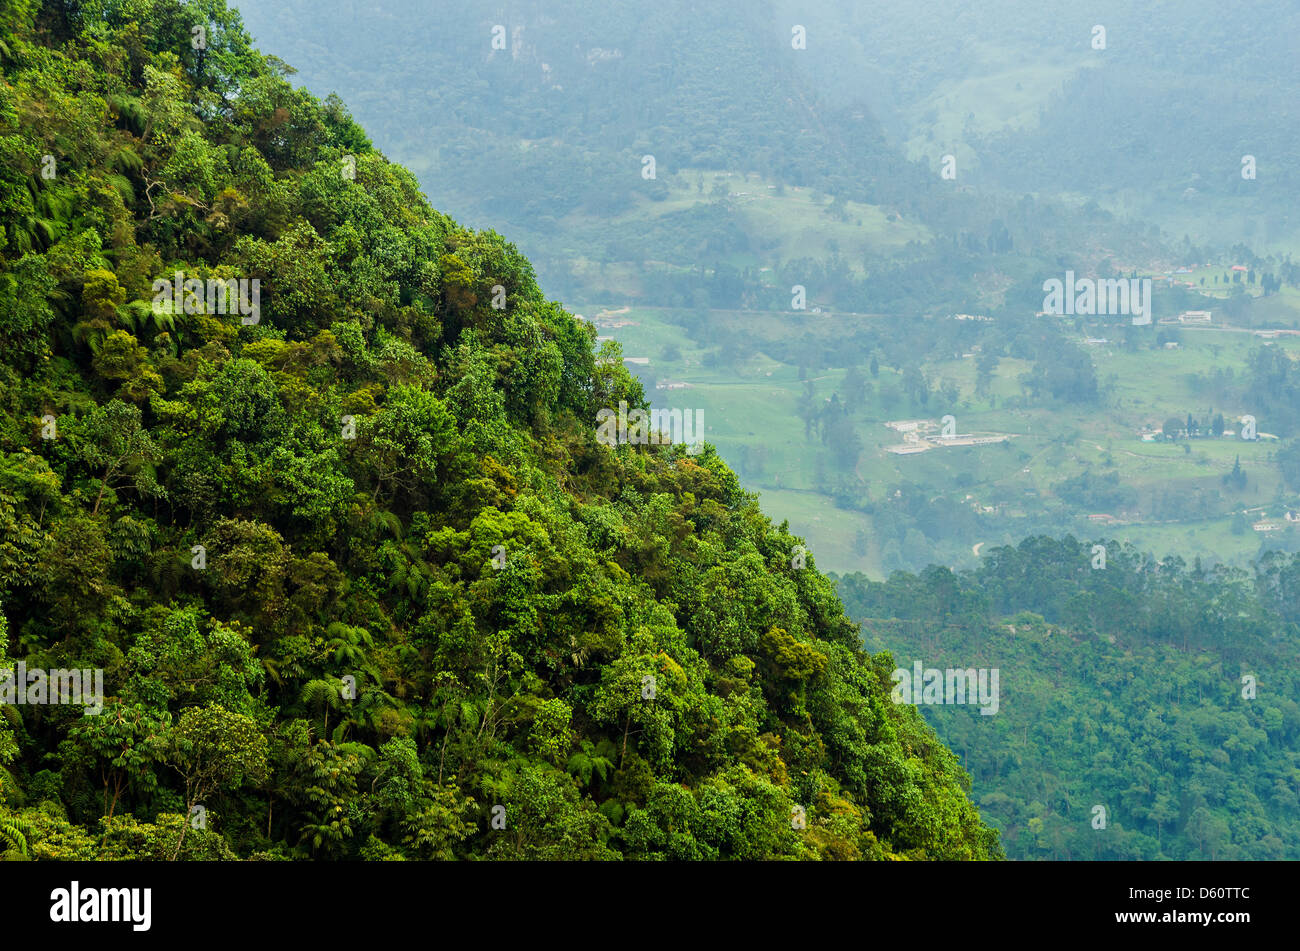 La exuberante vegetación de la jungla que cubre la colina con un valle en el fondo Foto de stock